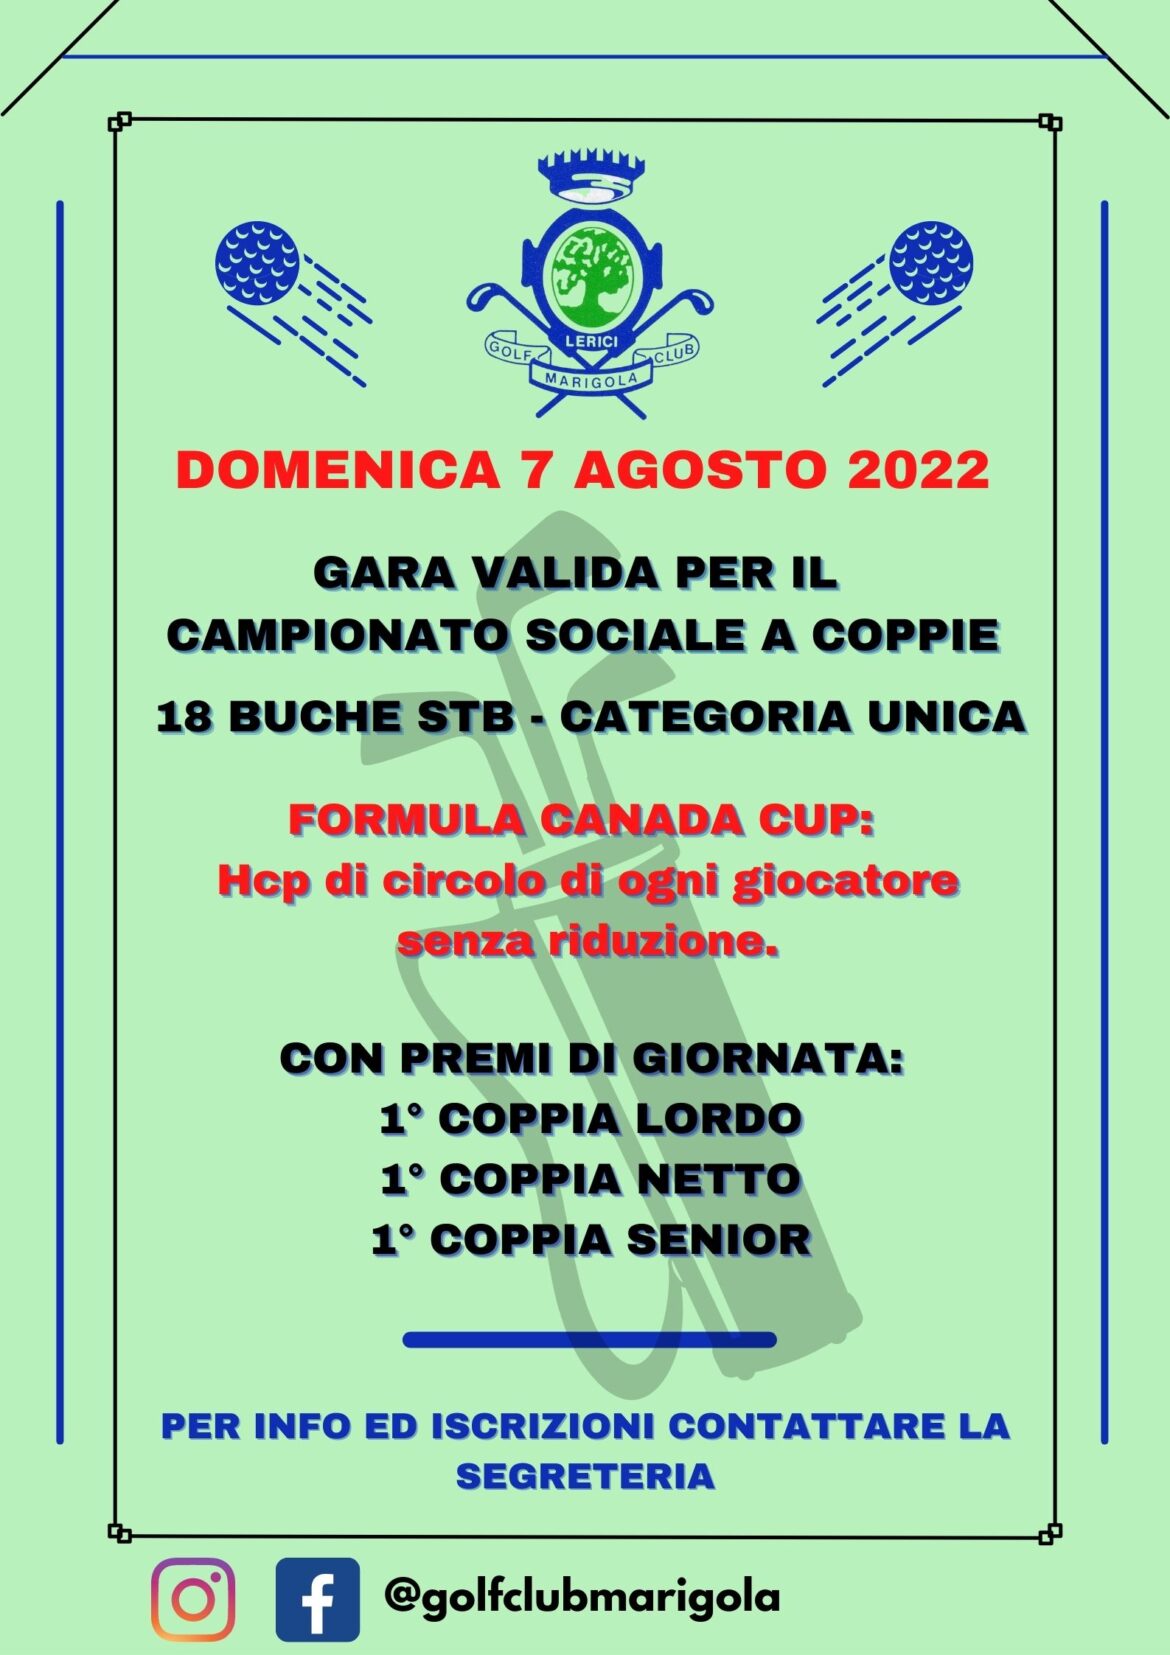 CS COPPIE 2022 – formula canada cup – domenica 7 agosto2022